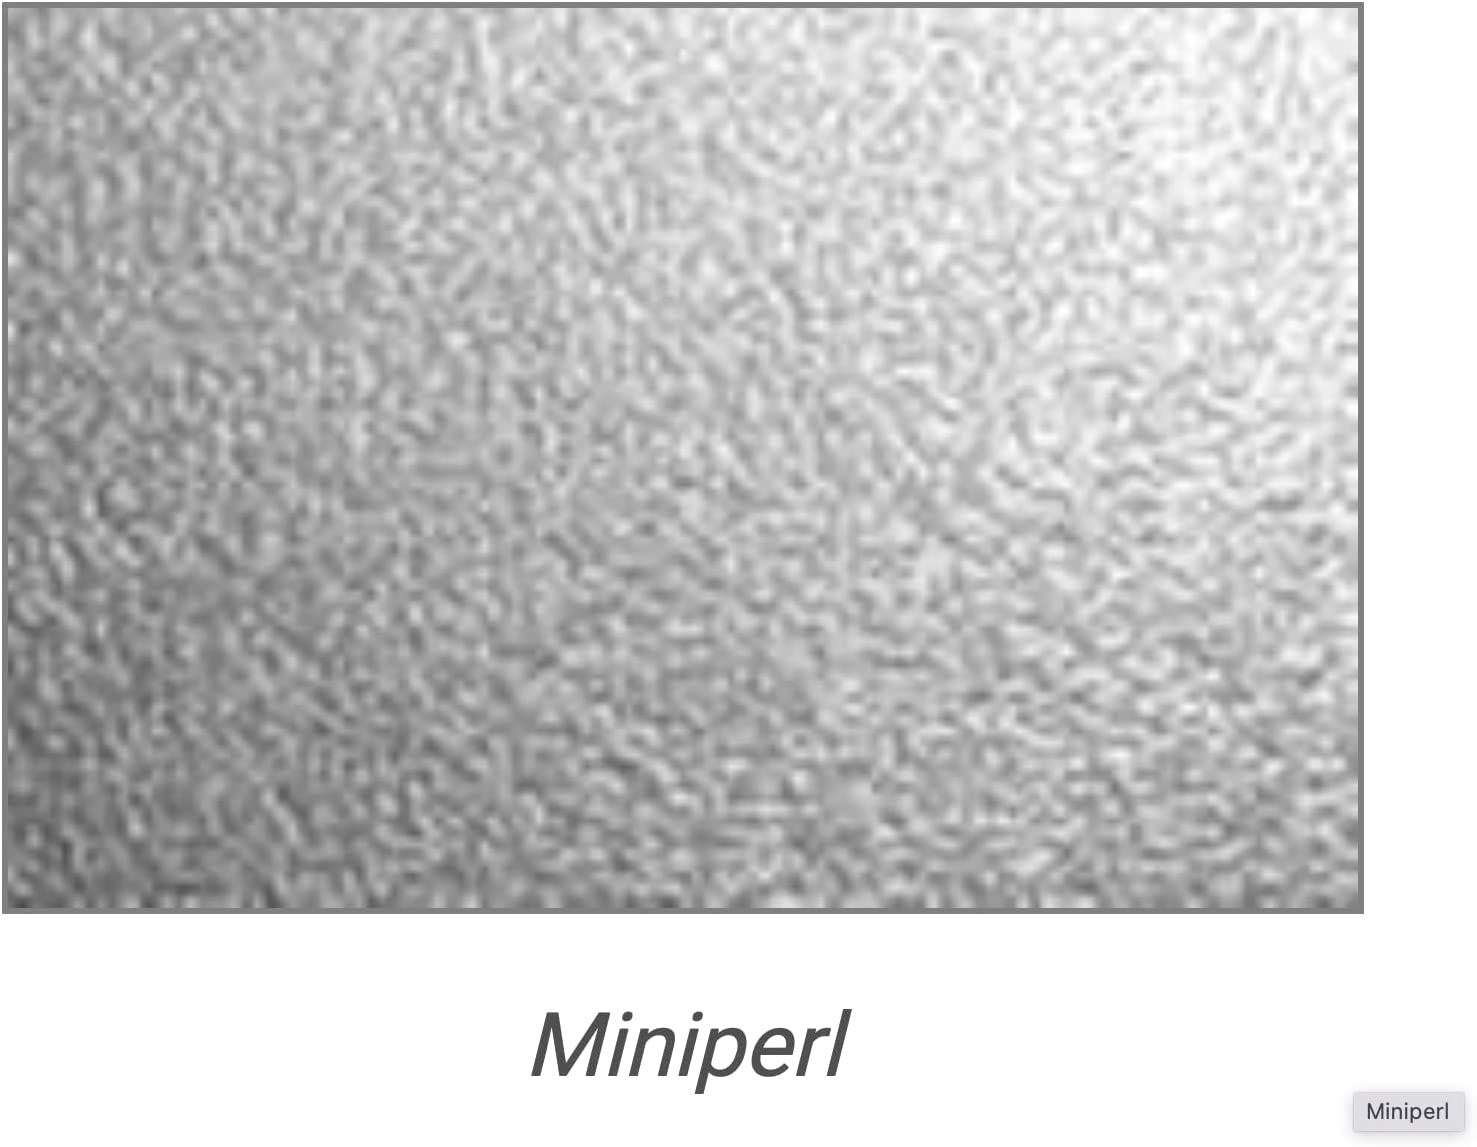 Geschirrspülerfront 715 x 444 mm, Weiss Frontblende Tür 19mm voll-, teilintegriert oder n. Maß - Tischlerware Qualität aus Deutschland Kopie